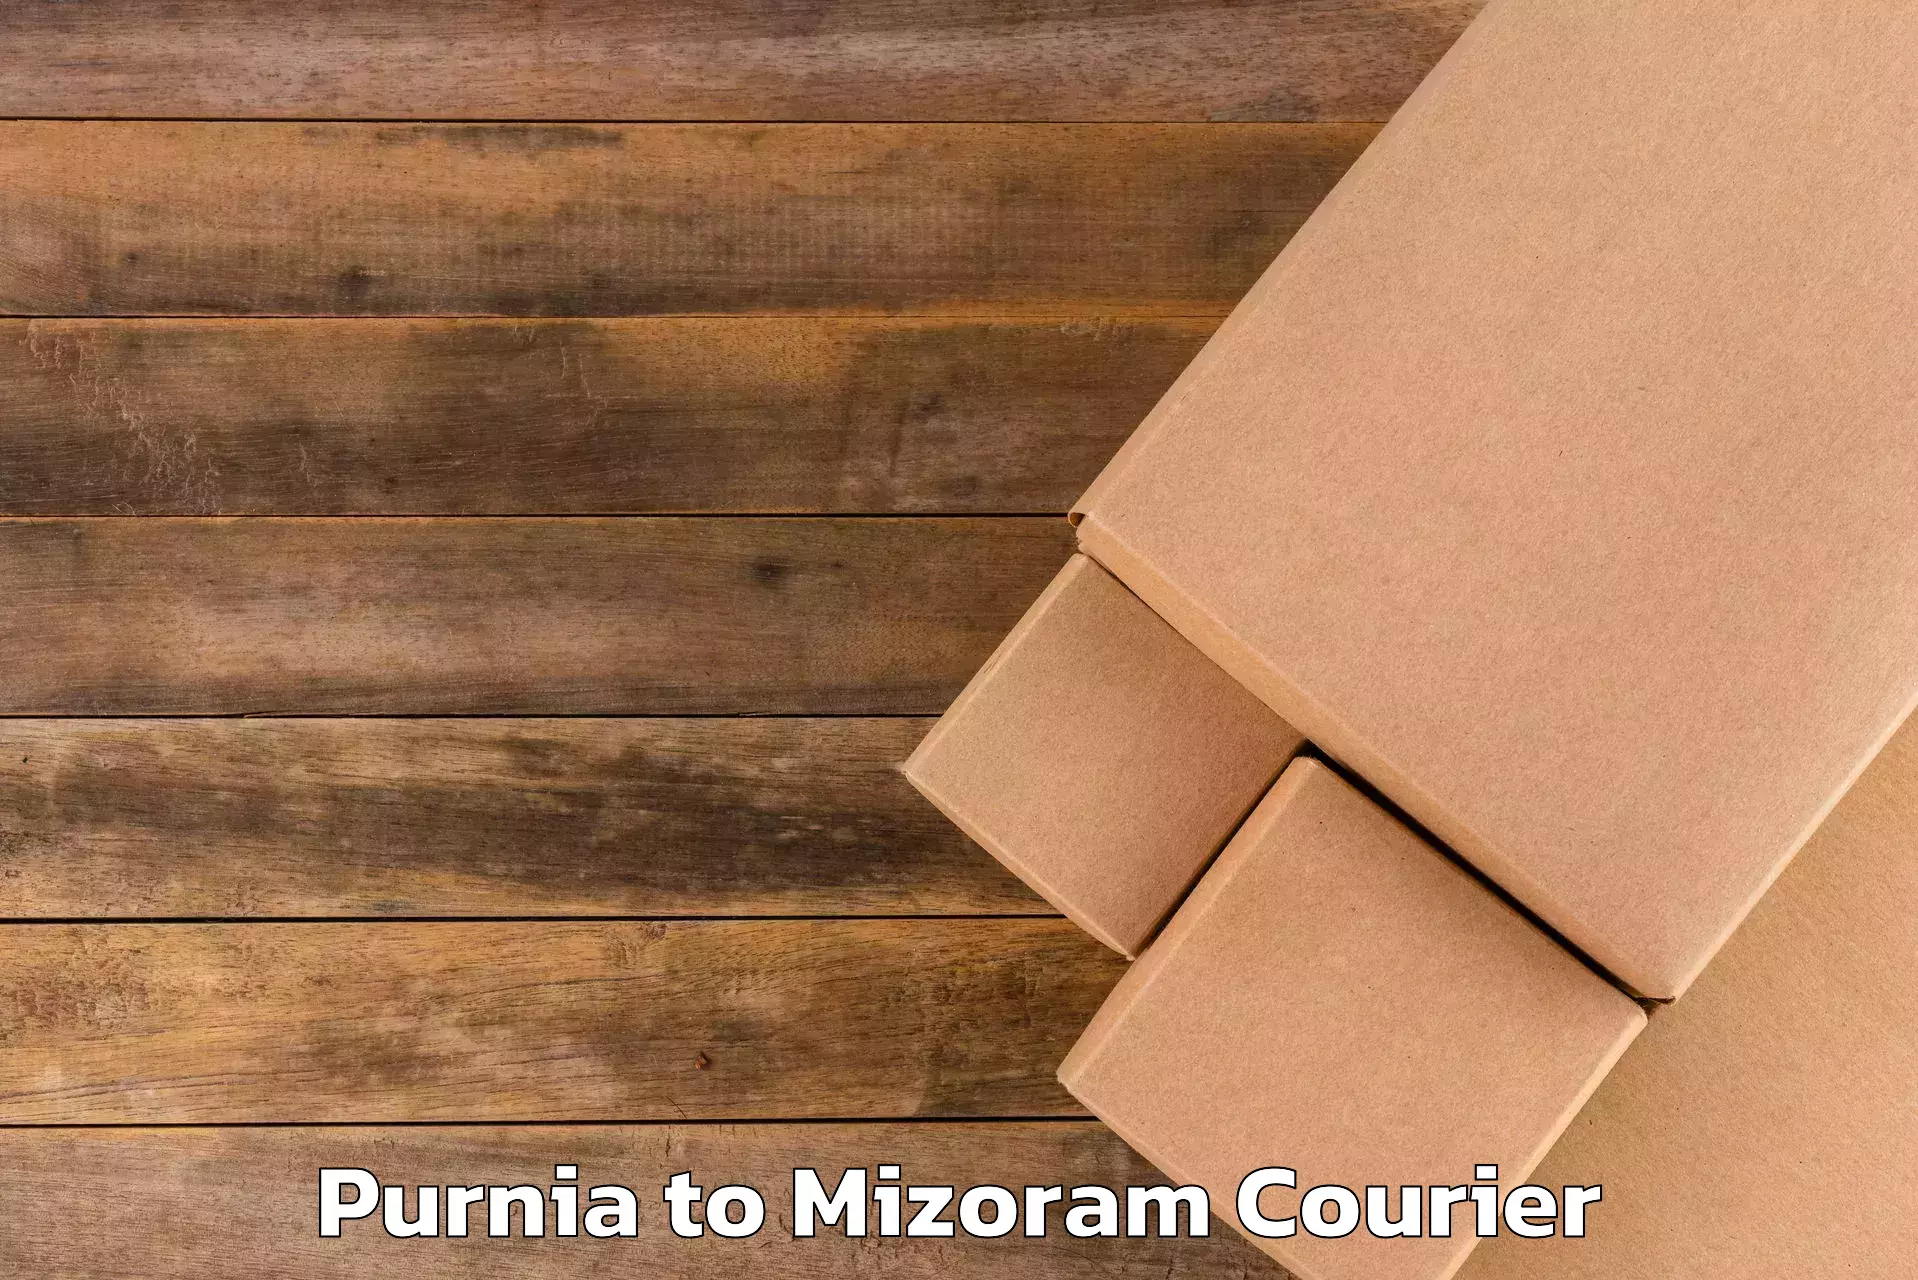 Baggage transport innovation Purnia to Mizoram